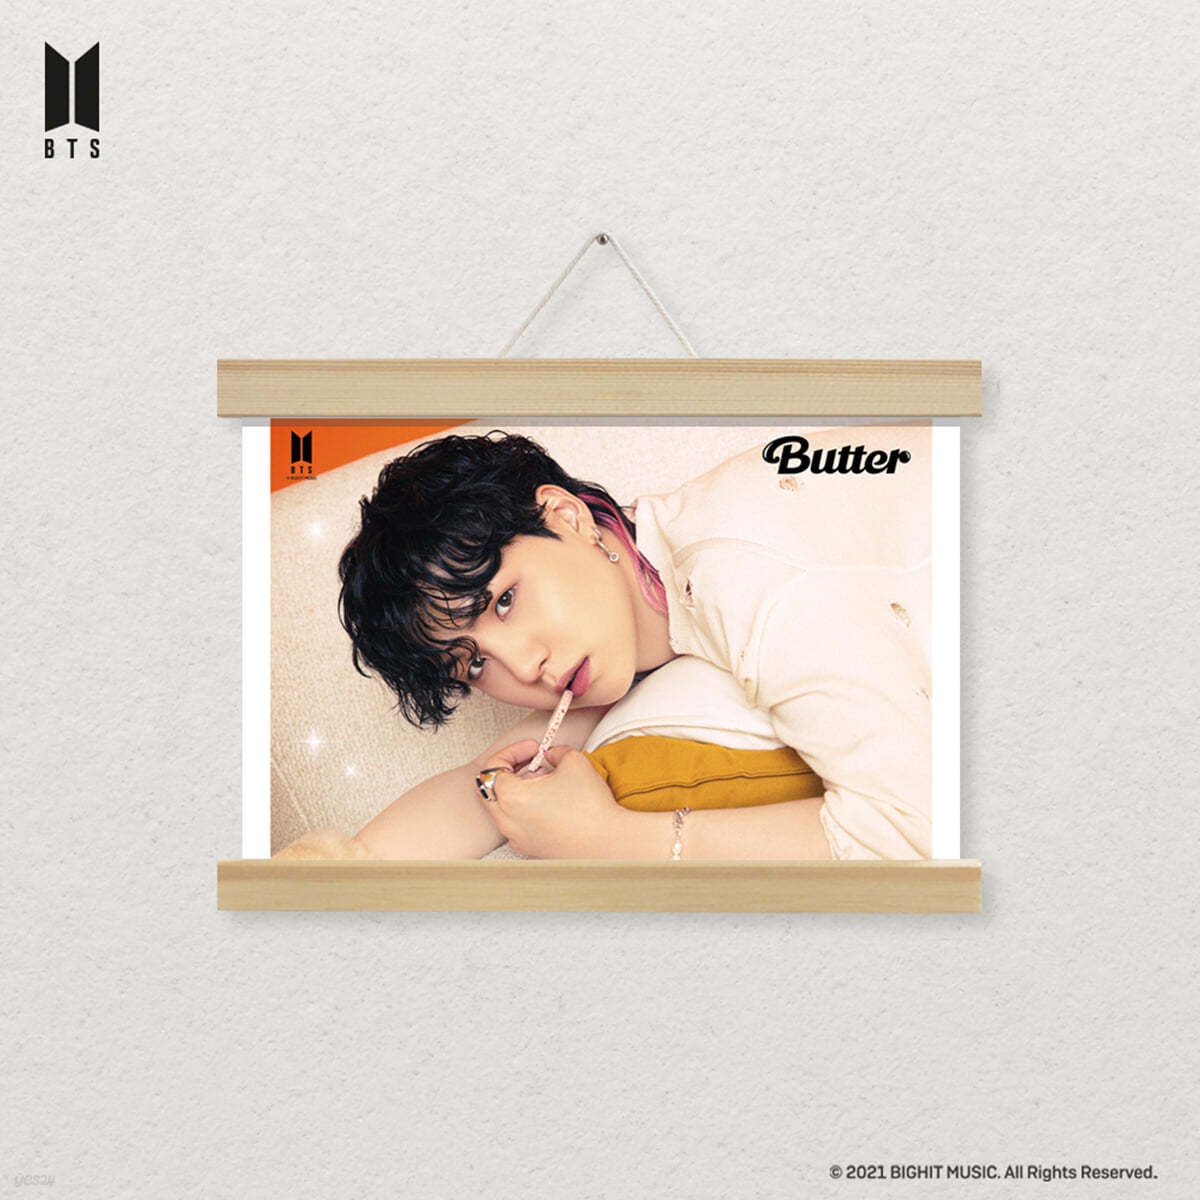 방탄소년단 (BTS) - Butter DIY 큐빅 페인팅 행잉 포스터 [SUGA]